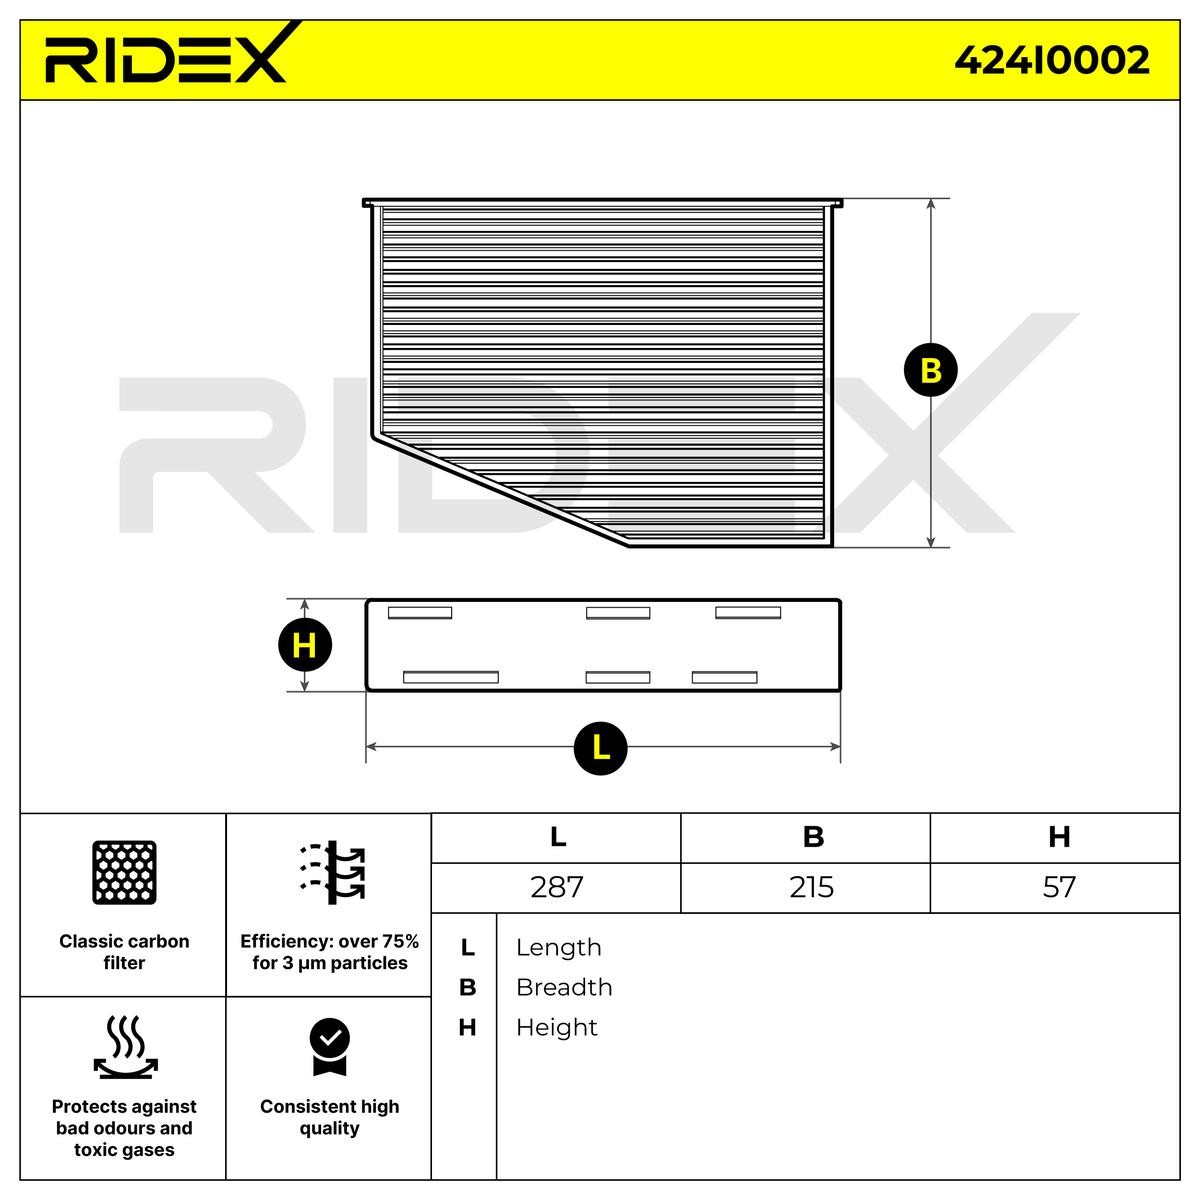 RIDEX Air conditioning filter 424I0002